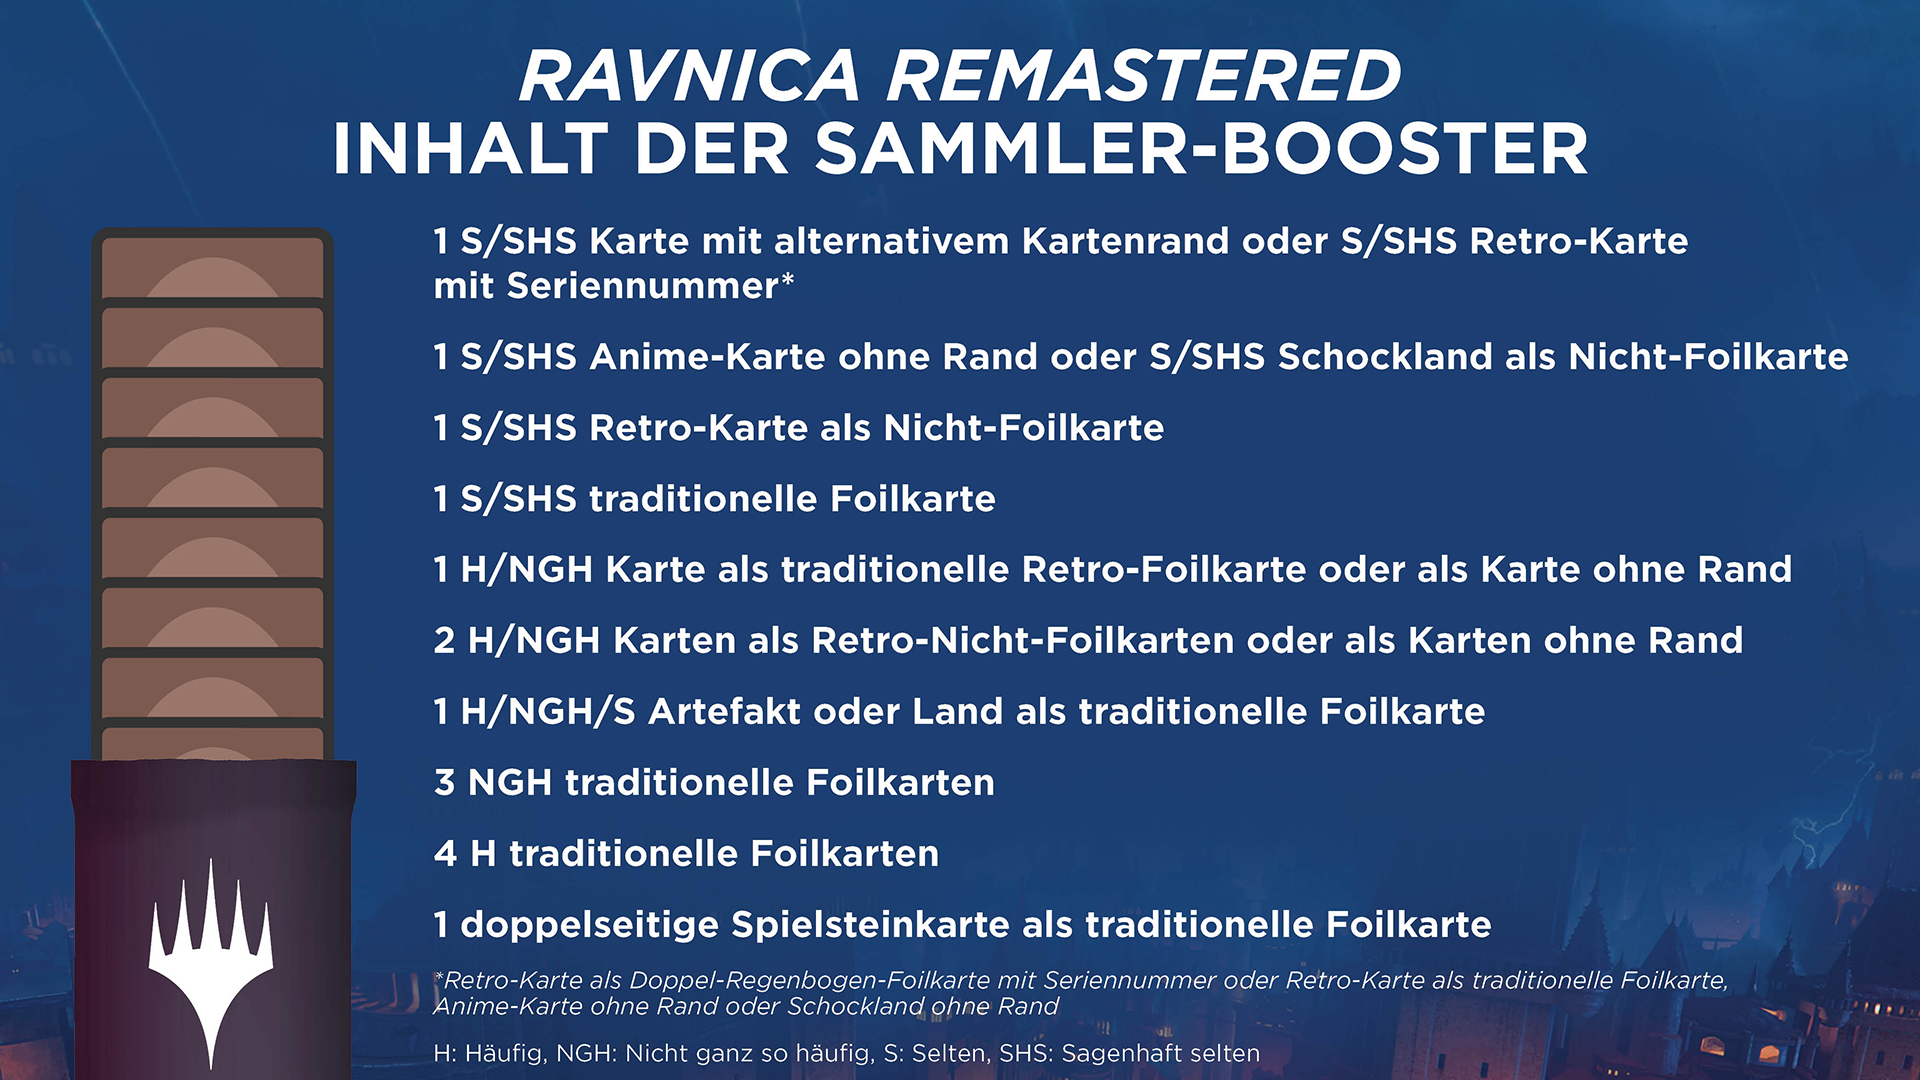 Ravnica Remastered Sammler-Booster-Übersicht